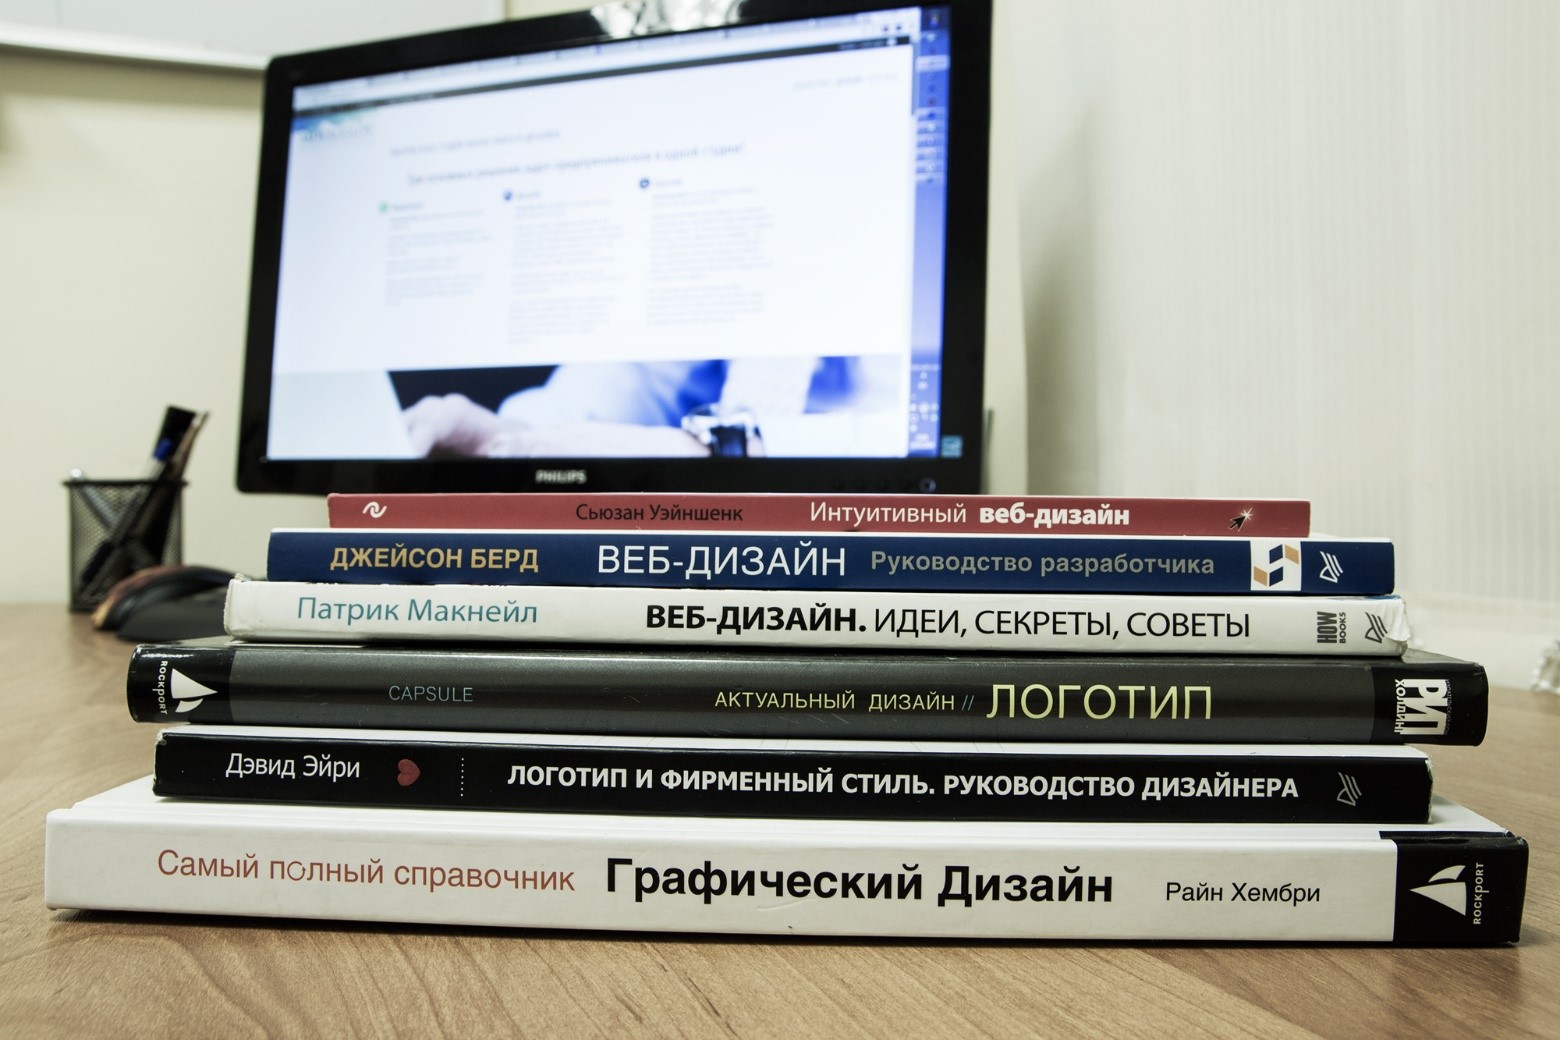 Рис. 11 – Книги для обучения веб-дизайну